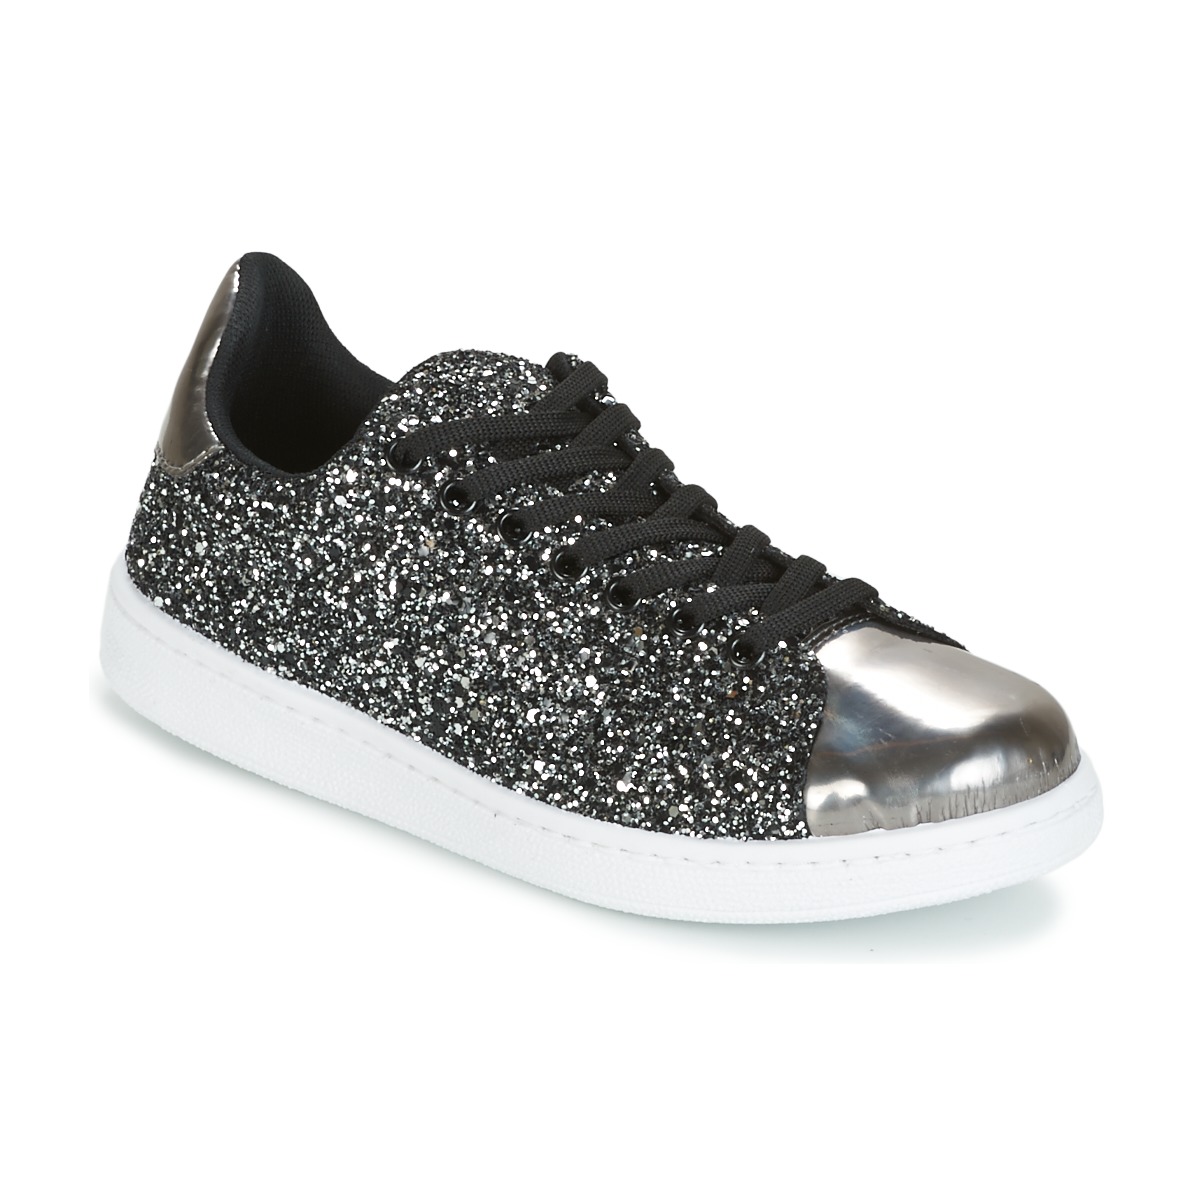 Παπούτσια Γυναίκα Χαμηλά Sneakers Yurban HELVINE Grey / Glitter